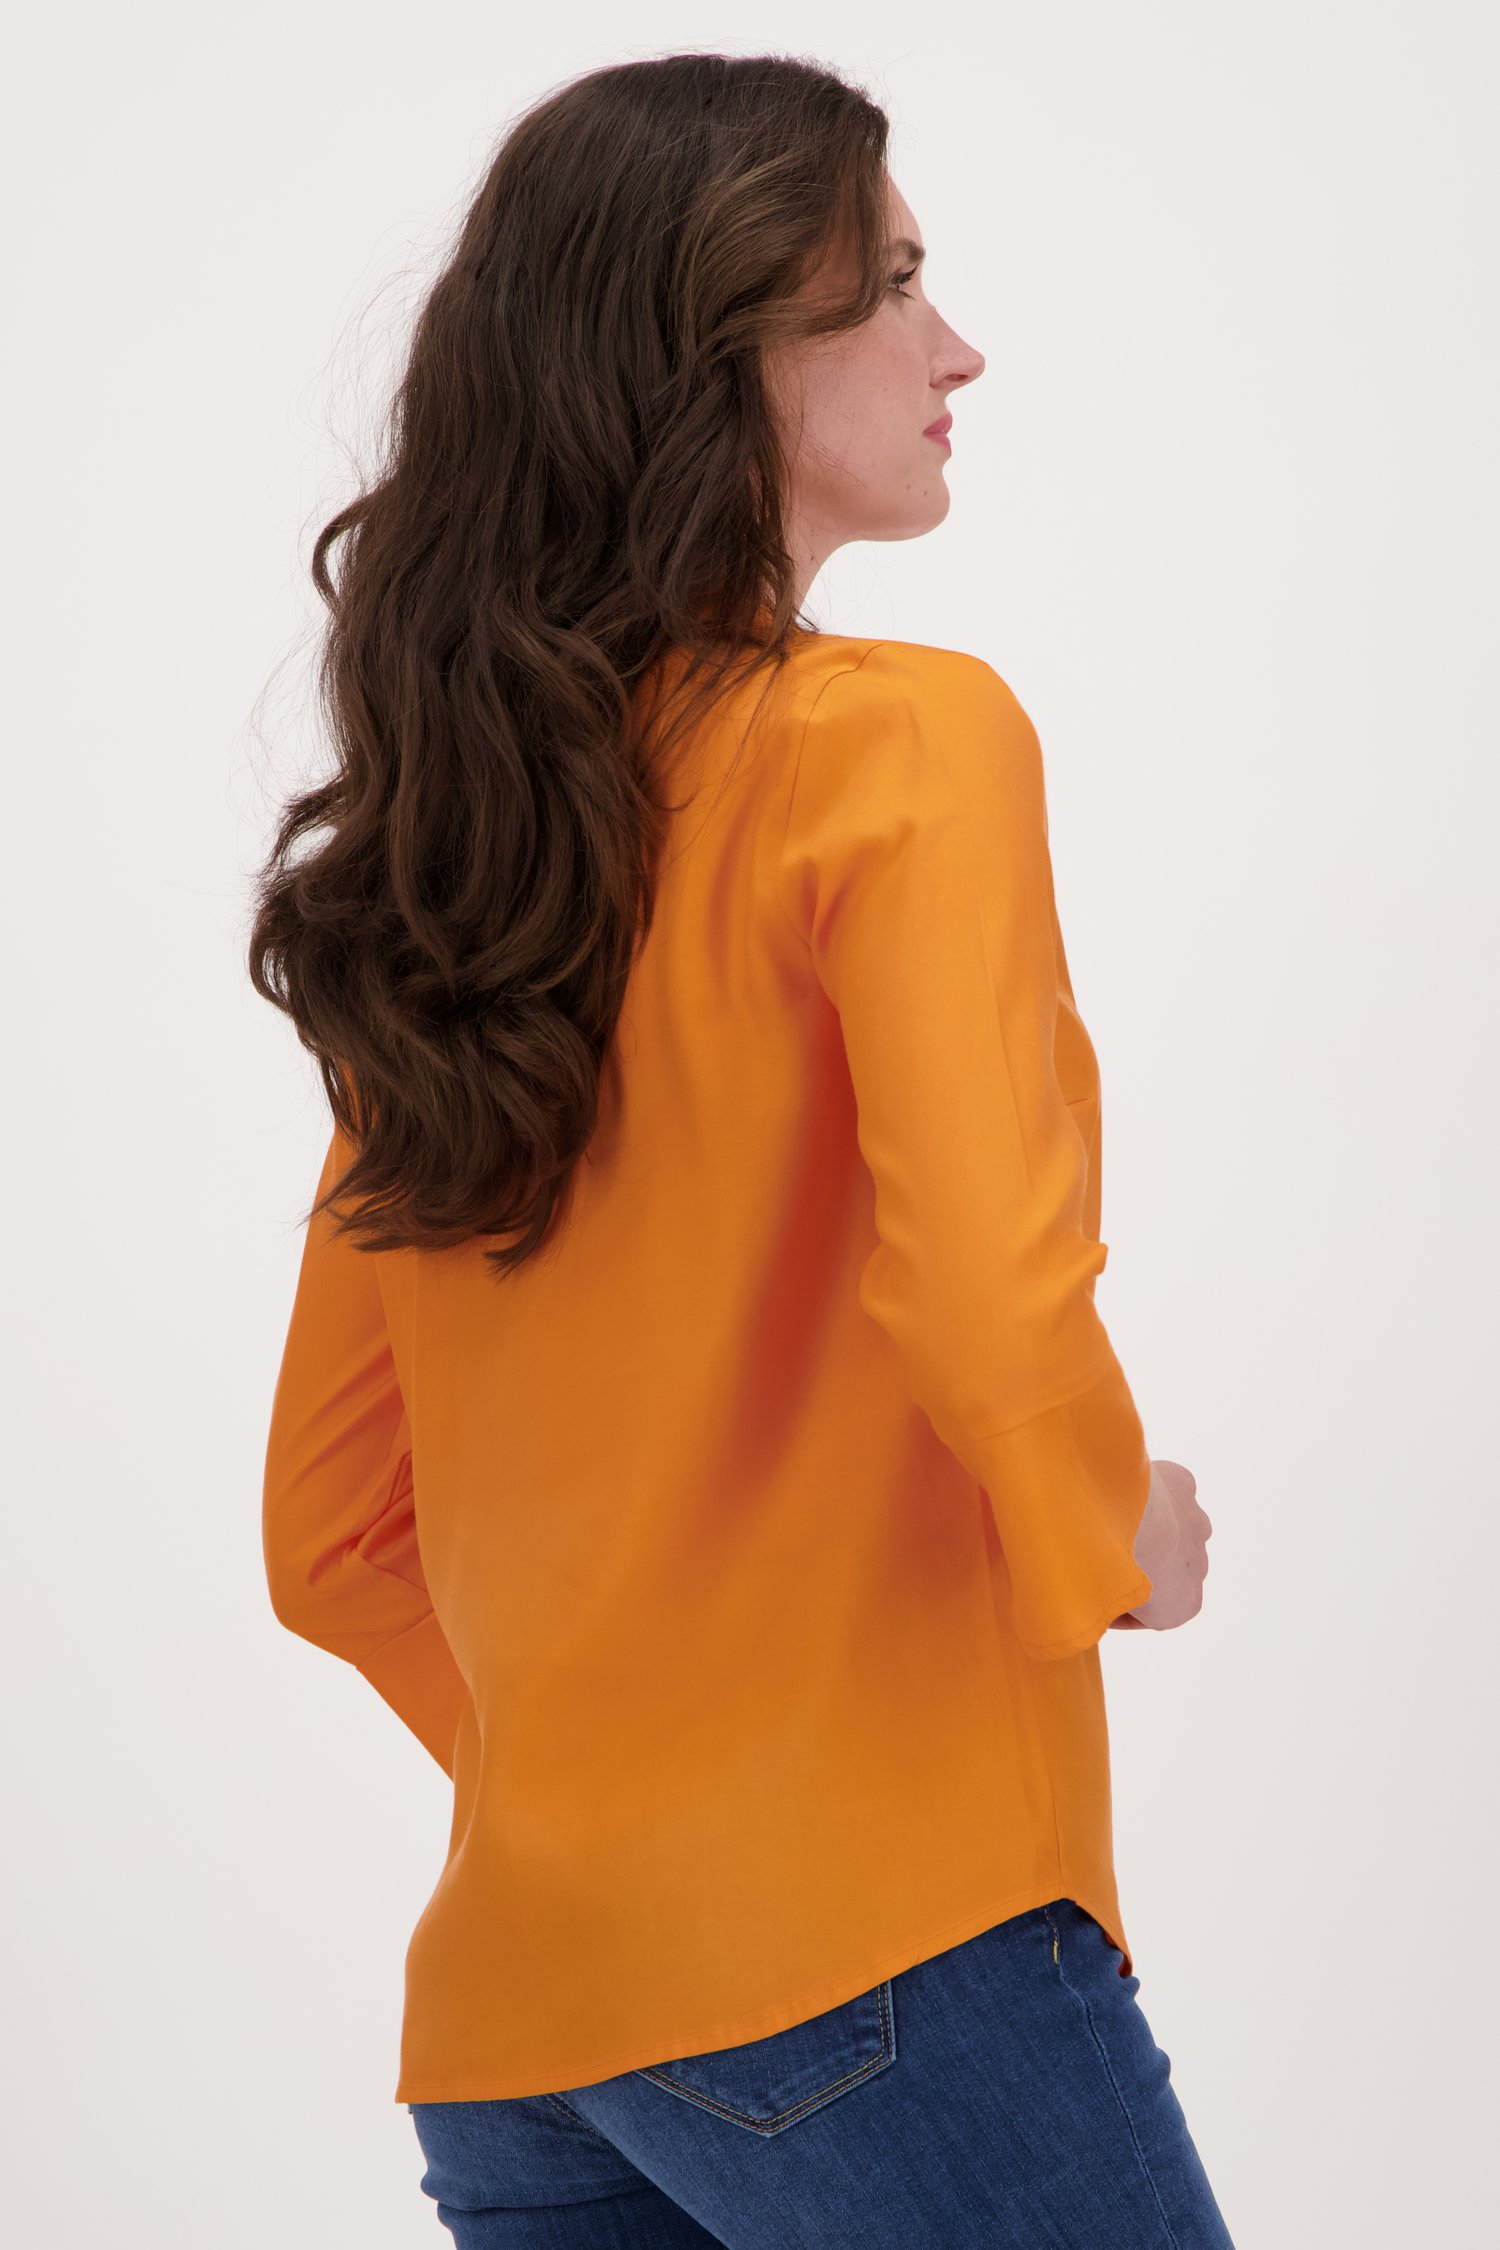 Oranje blouse met elegante 3/4 mouwen van More & More voor Dames